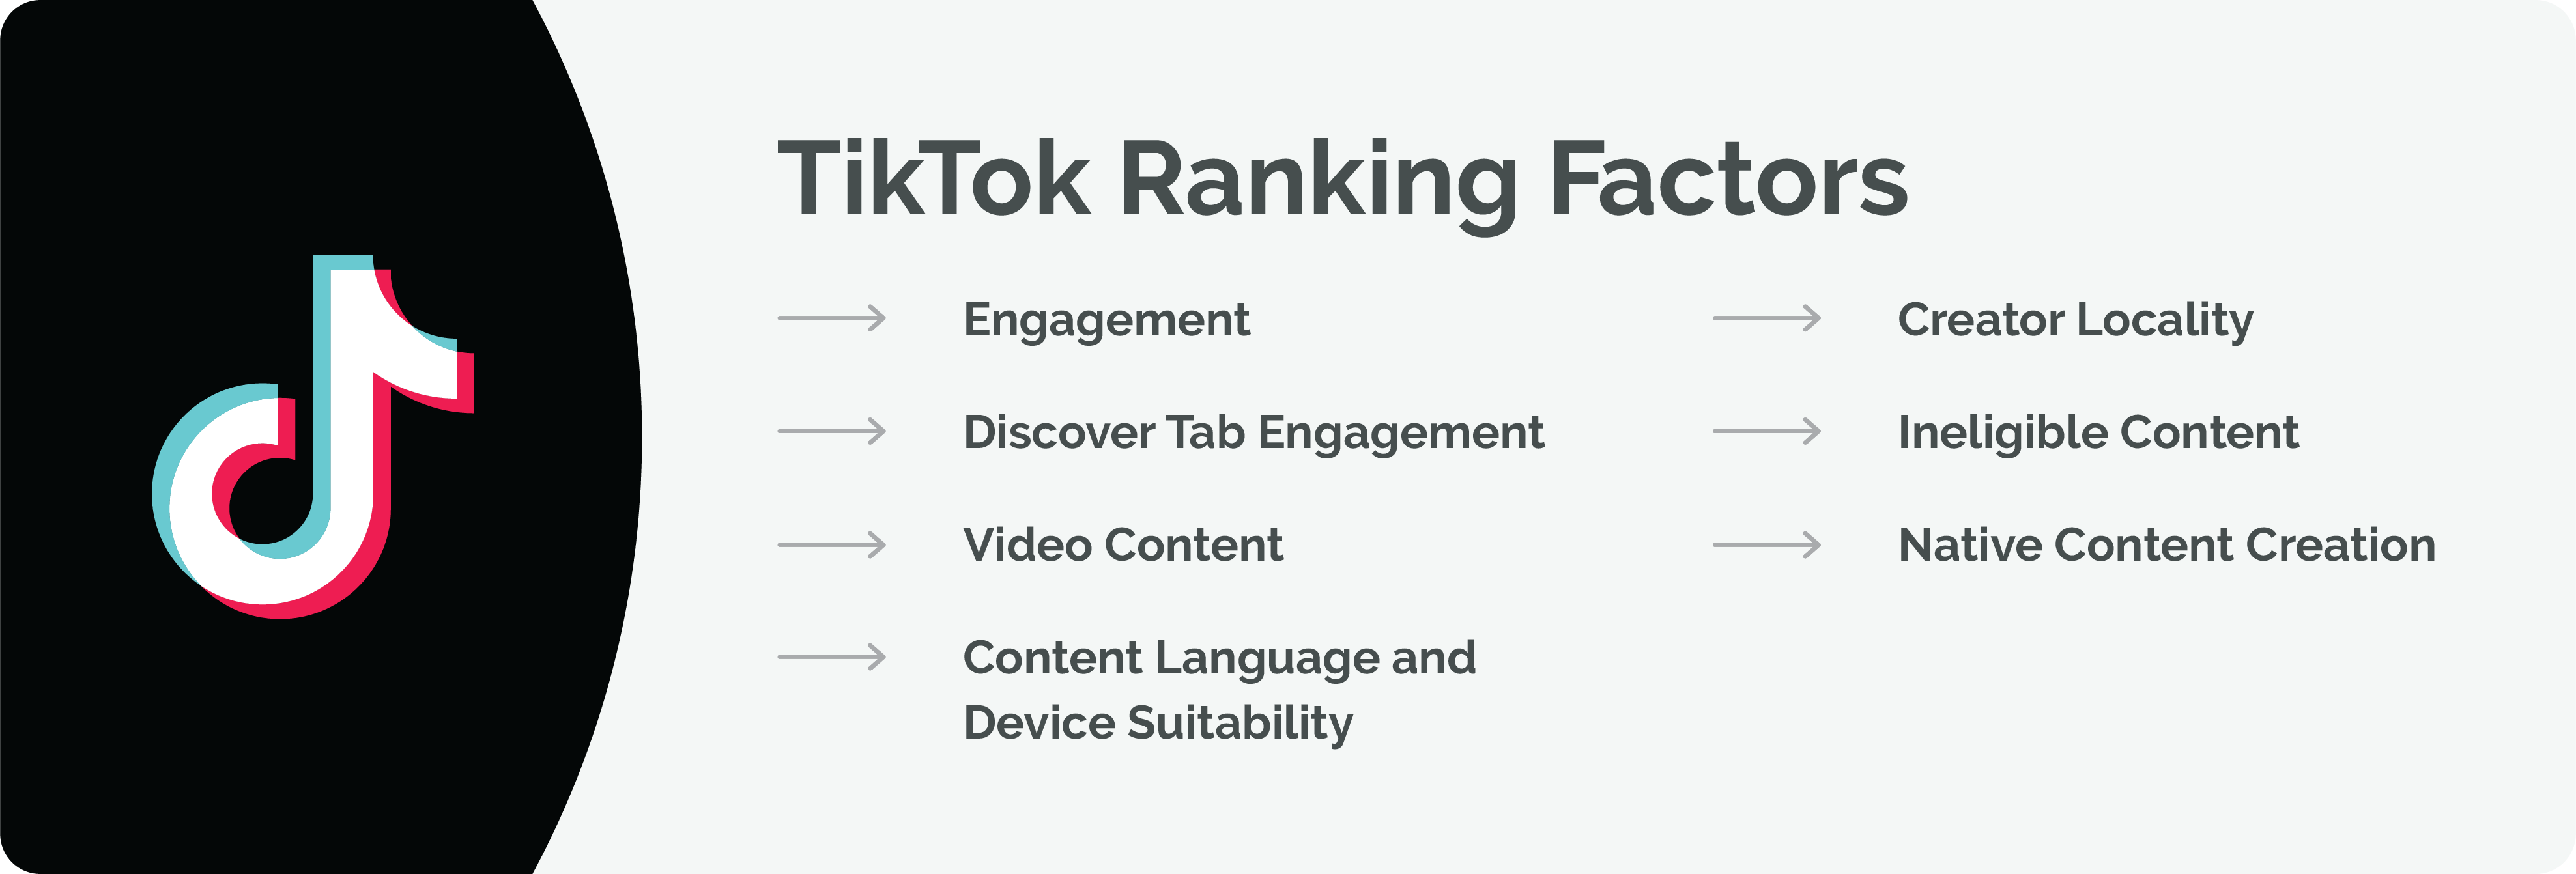 TikTok ranking factors